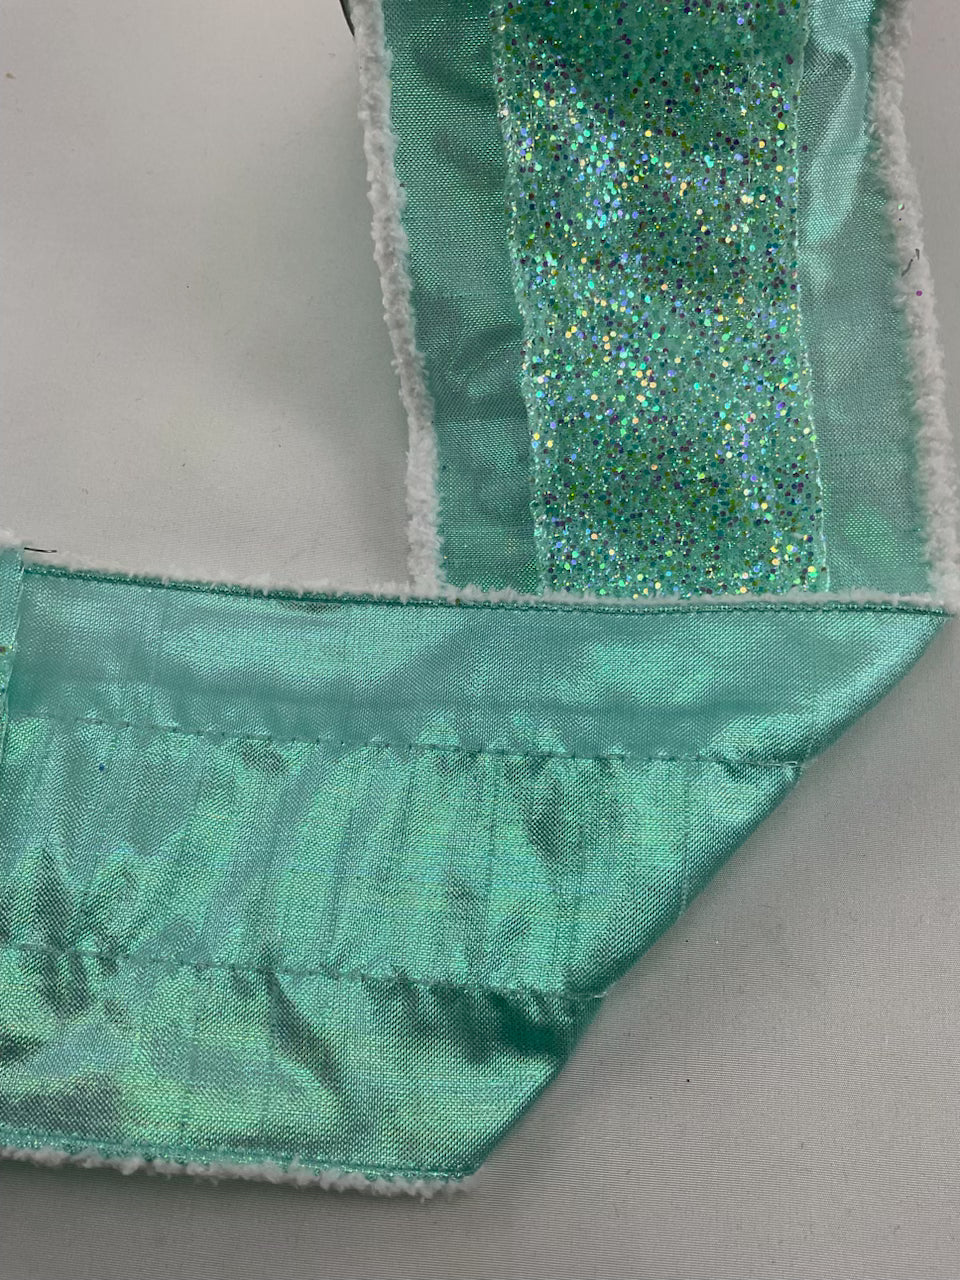 Mint green Glitter metallic wired ribbon, 4”